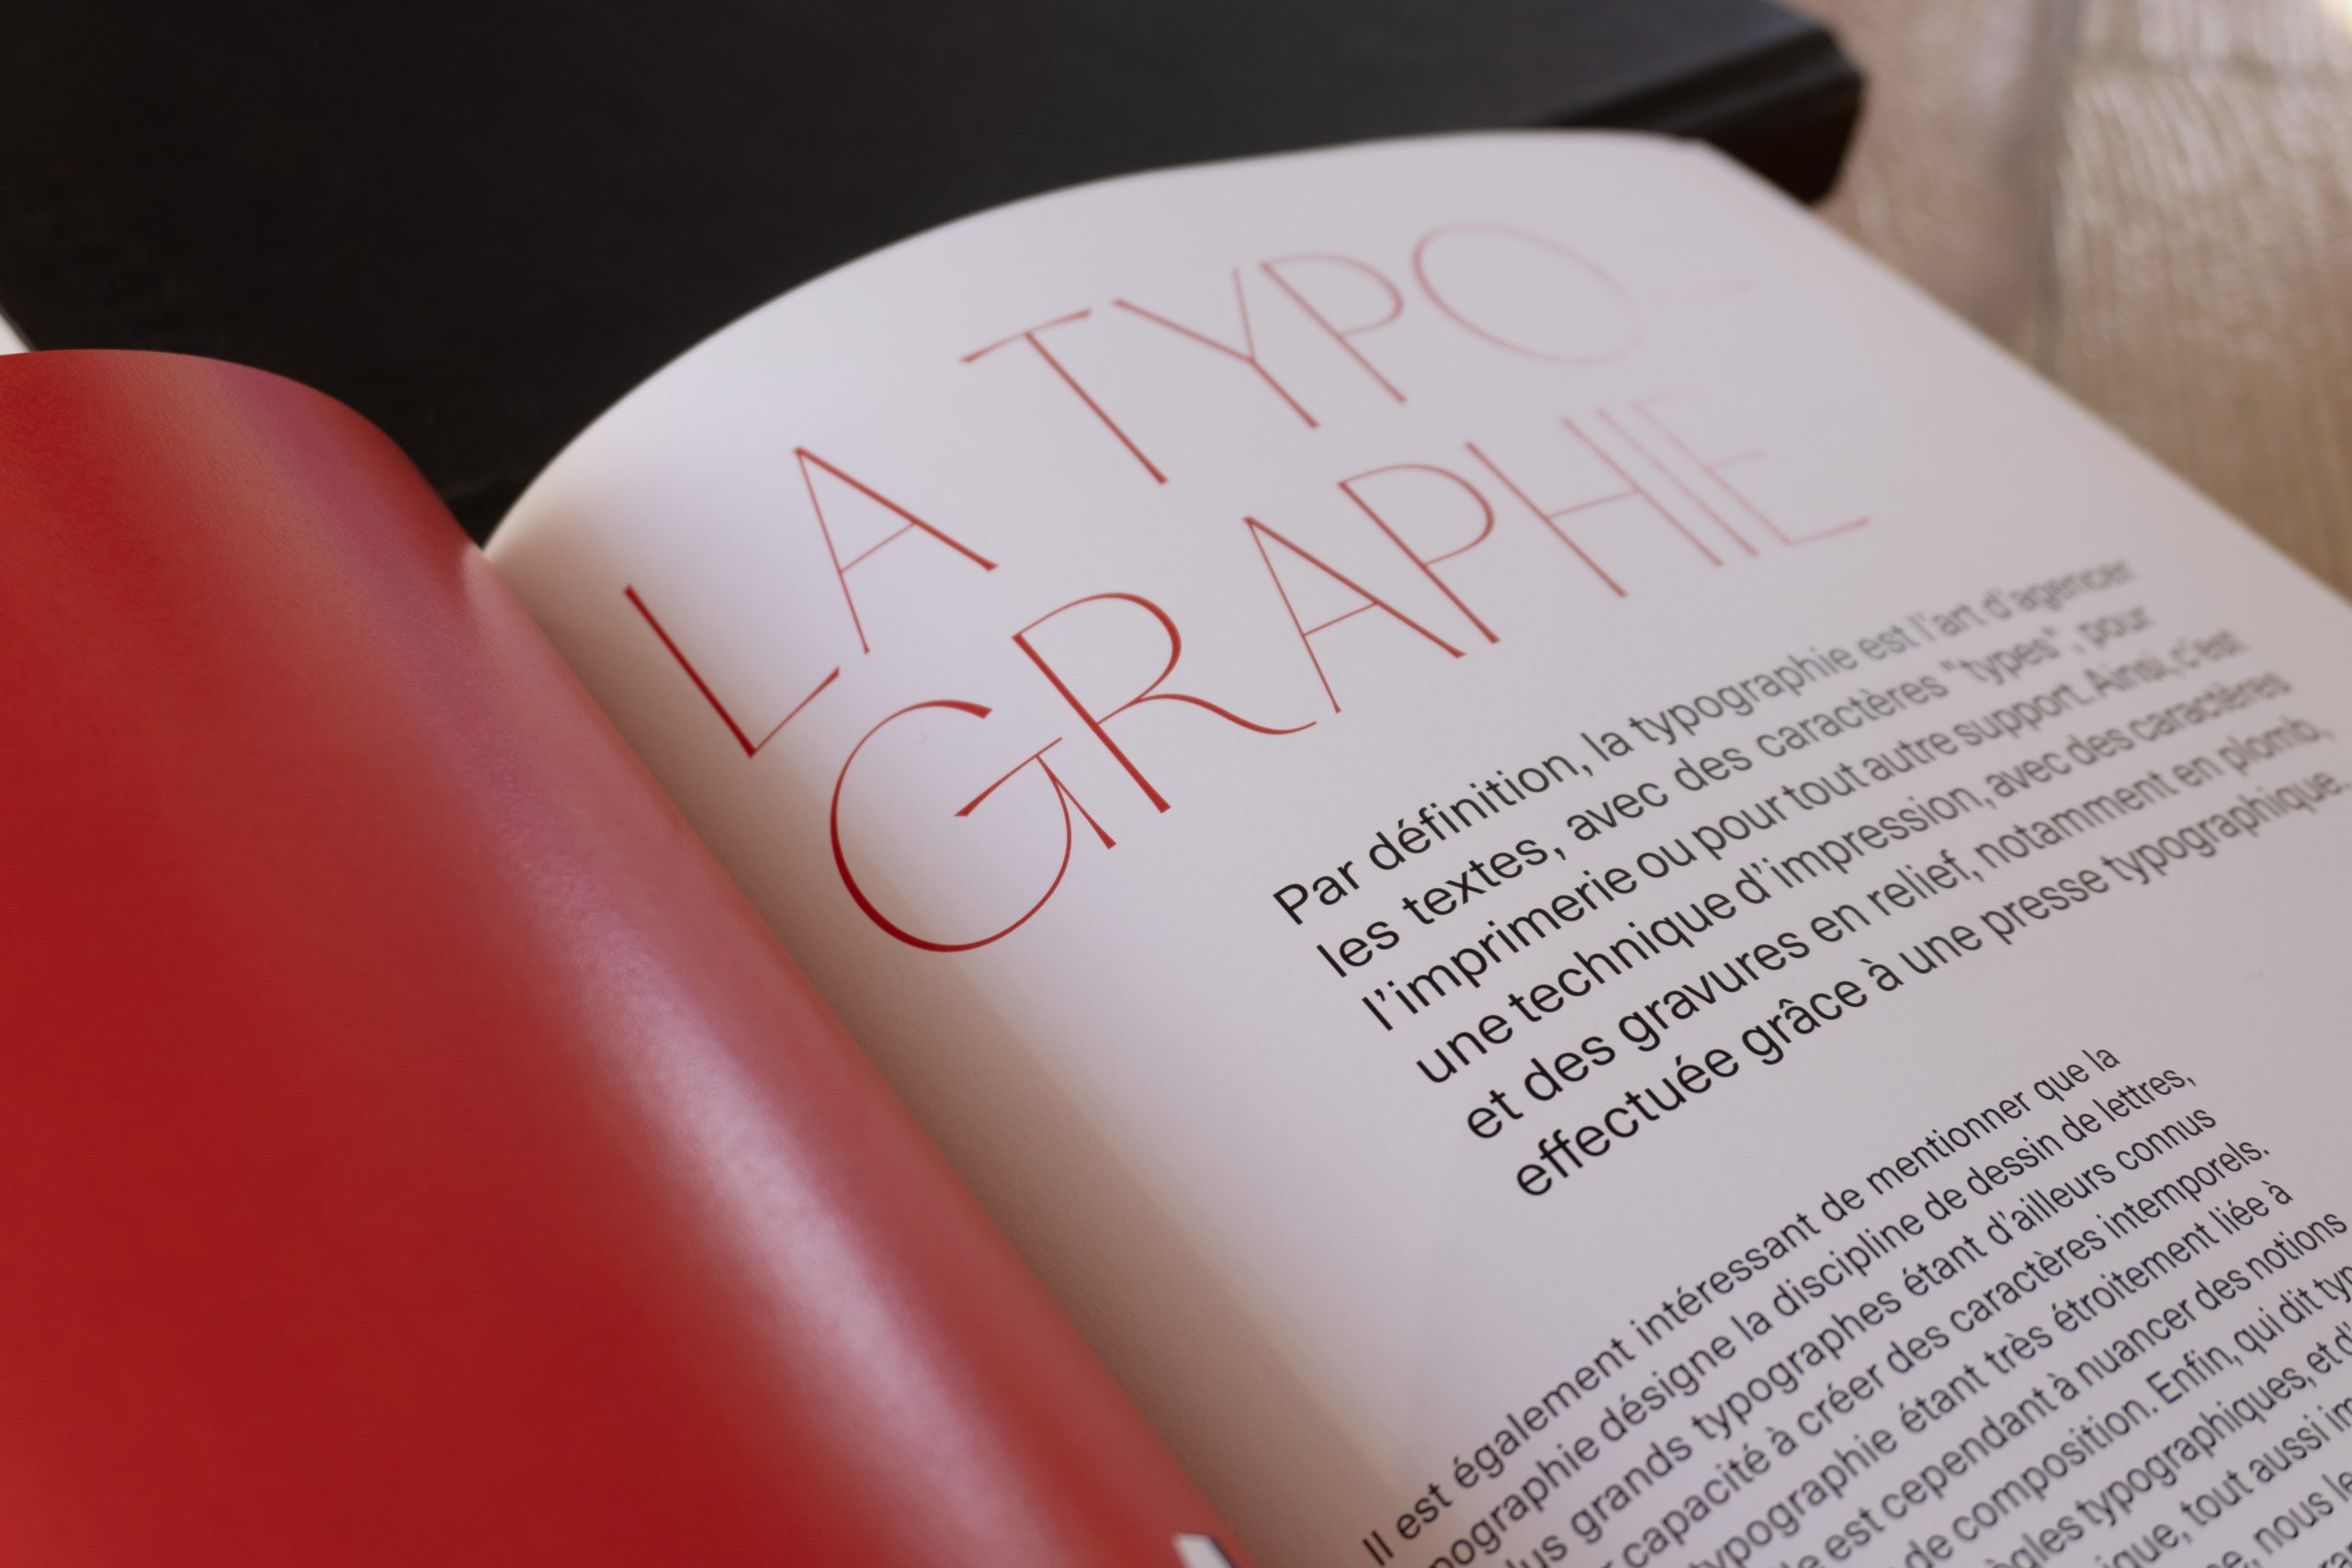 Visuel de l'intérieur du livre montrant la page de garde du chapitre sur la typographie en gros plan sur le nom du chapitre